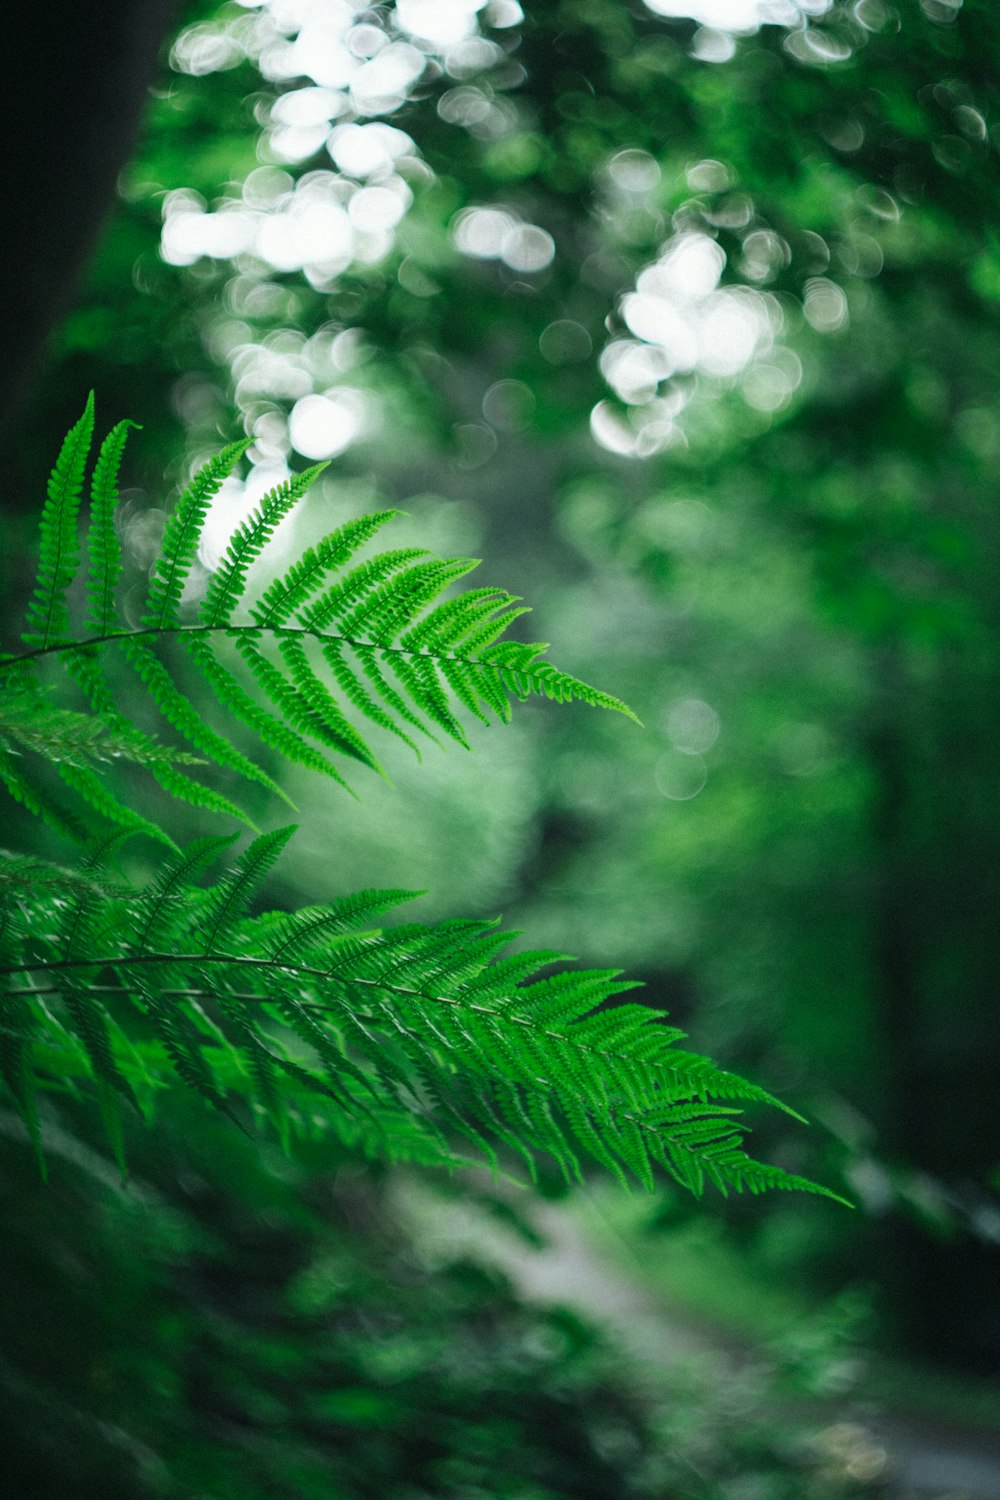 Hãy chiêm ngưỡng hình ảnh nền xanh lá cây tươi sáng này để tạm gác lại mọi căng thẳng trong cuộc sống và cảm nhận cảm giác thanh tịnh, mát mẻ như đang lạc vào thiên nhiên trong lòng thành phố ồn ào.